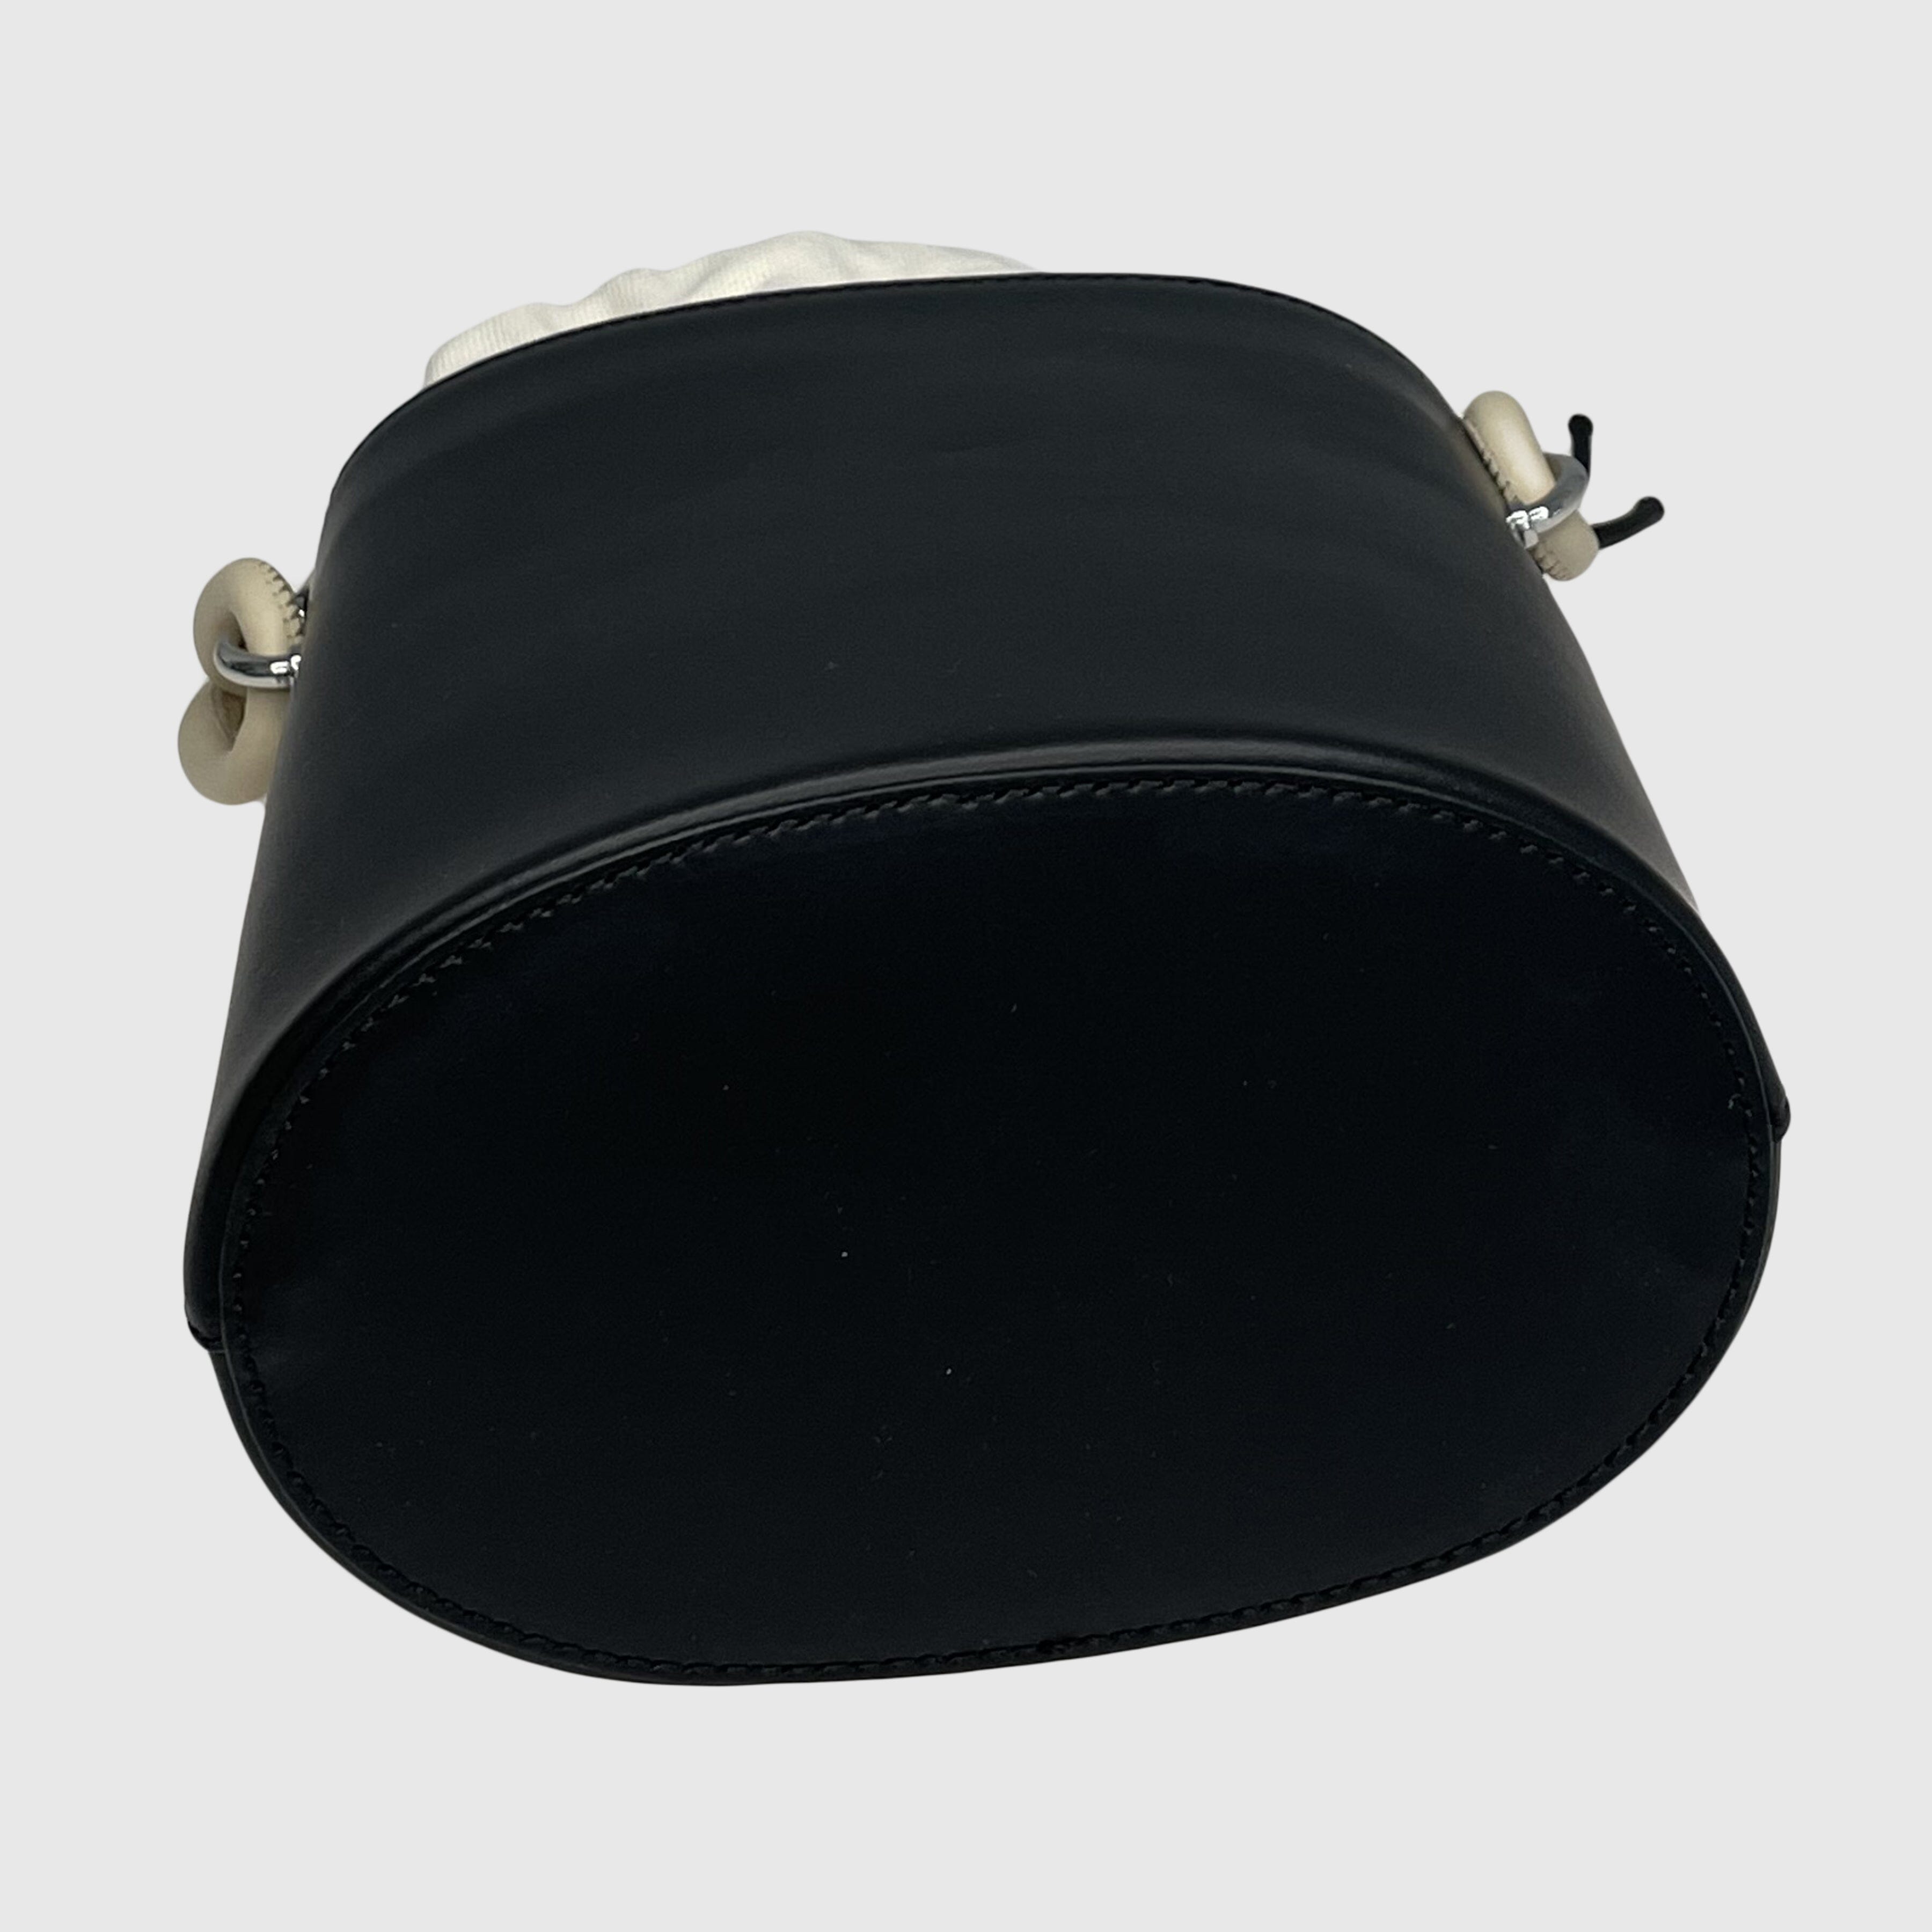 Black Braided Top Handle Bucket Bag